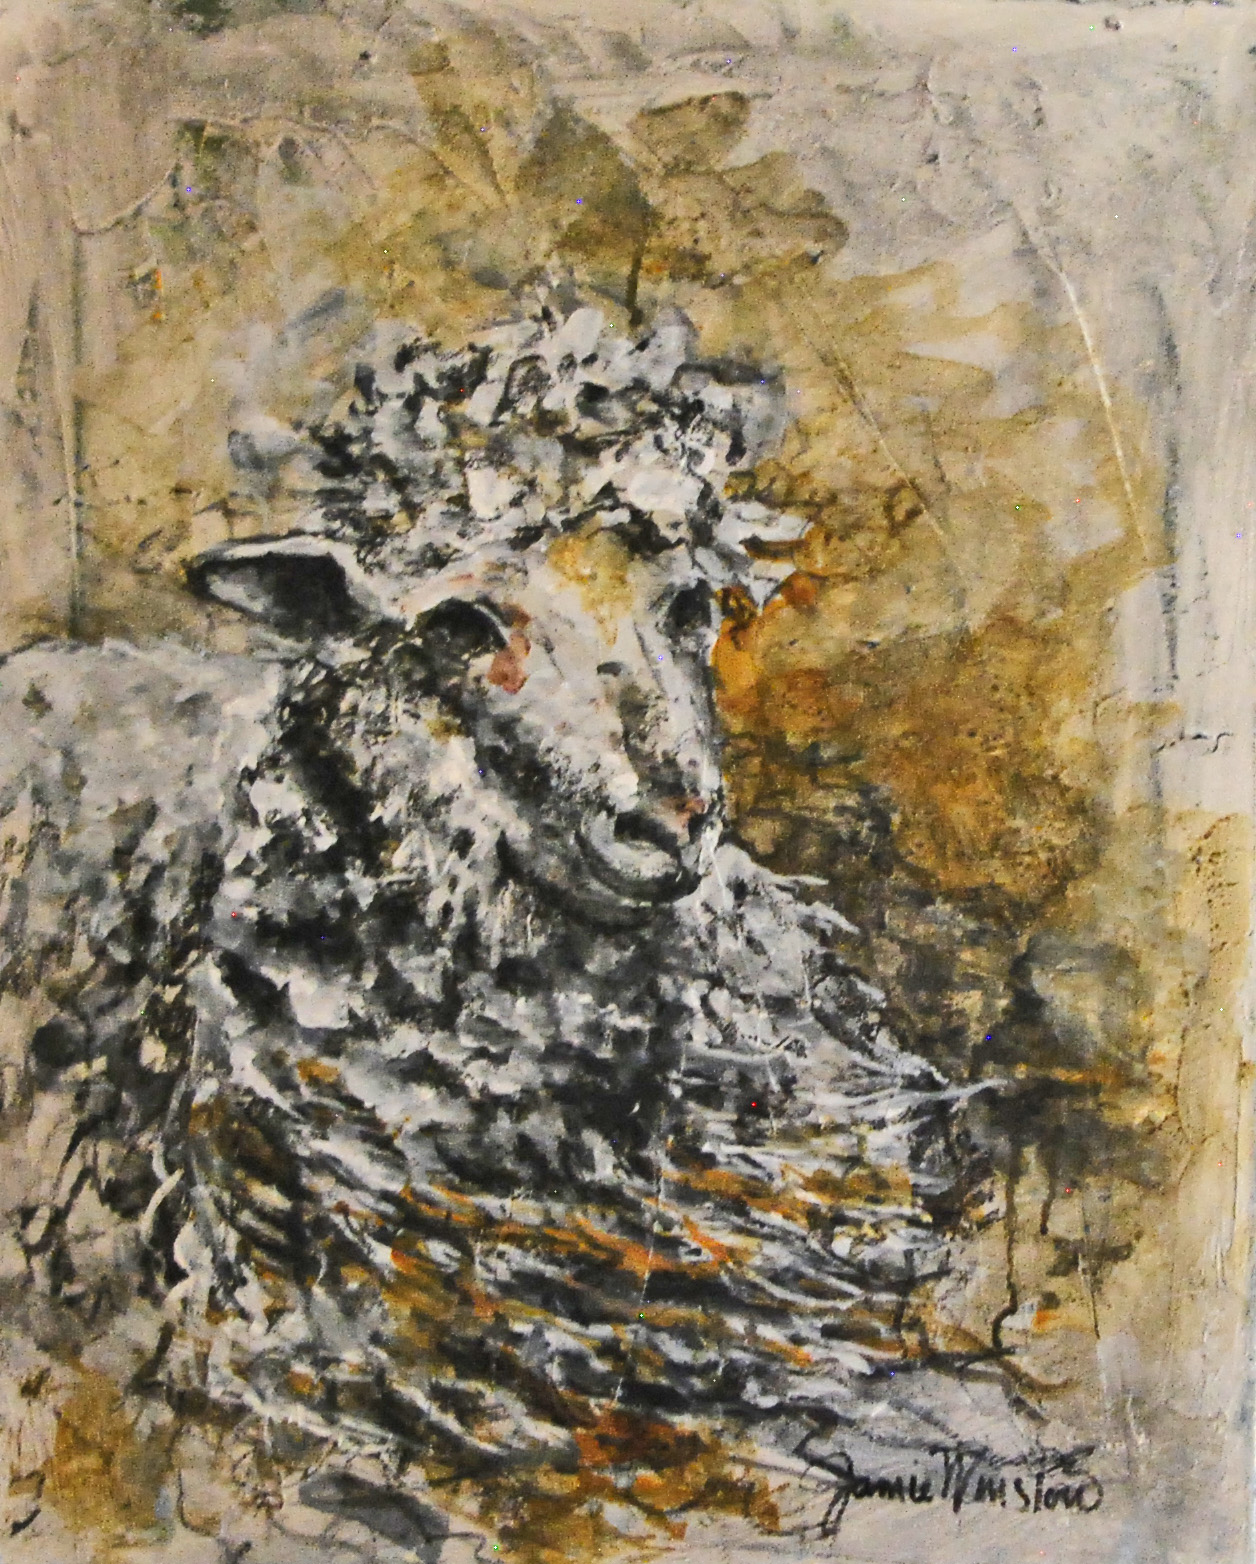 Jamie Winslow: Churro Lamb